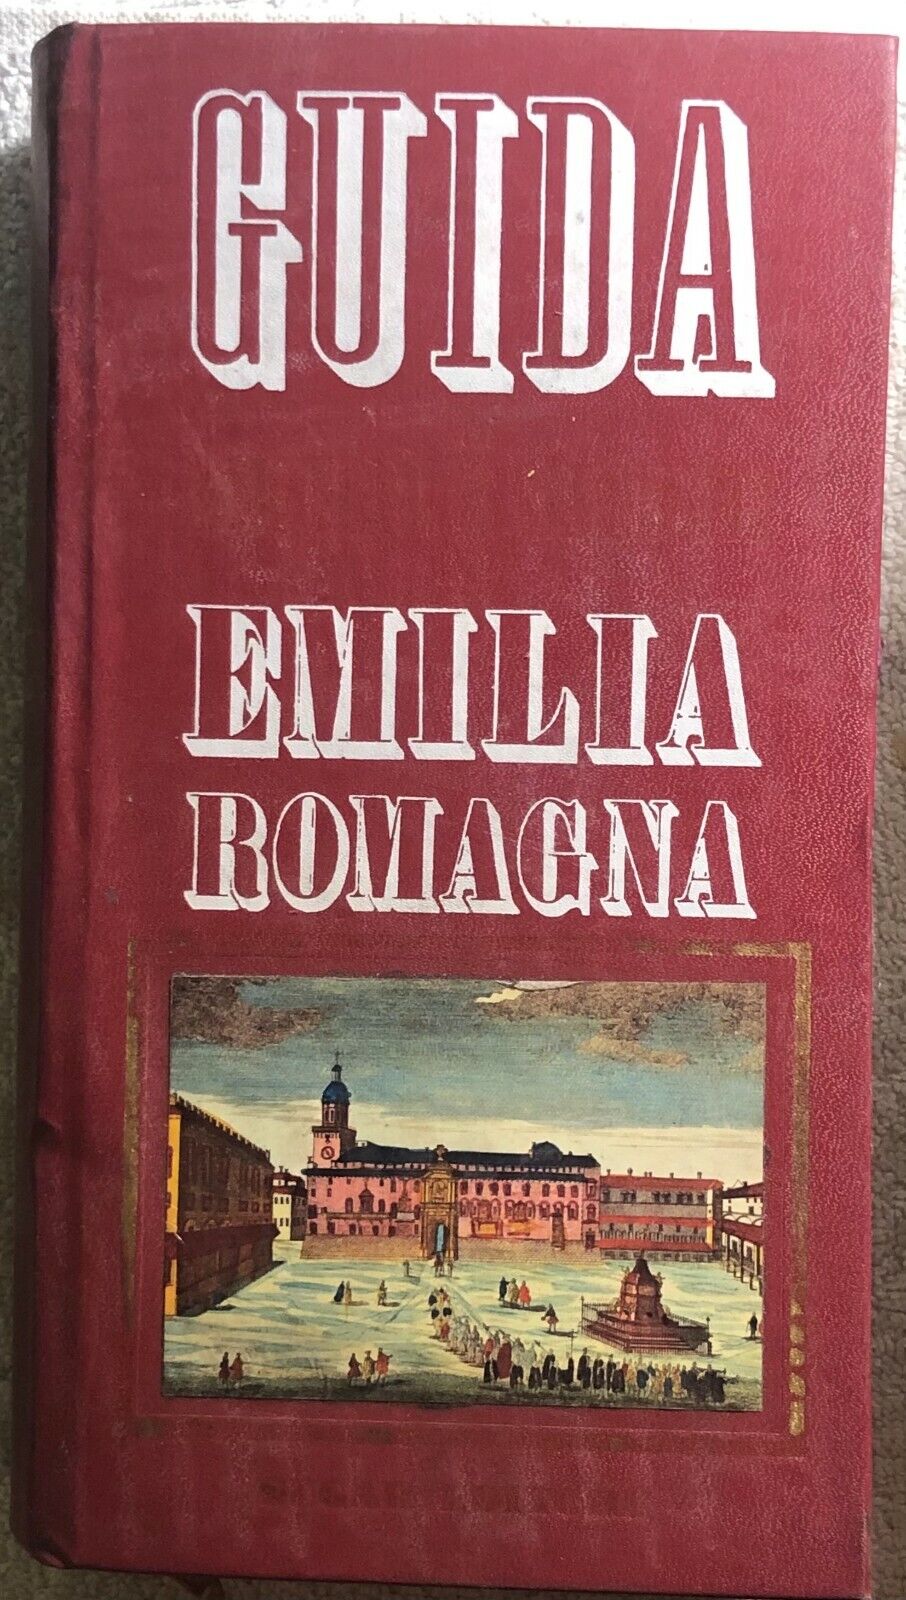 Guida ai misteri e segreti delL'Emilia Romagna di Aa.vv.,  1987,  Sugar Editore